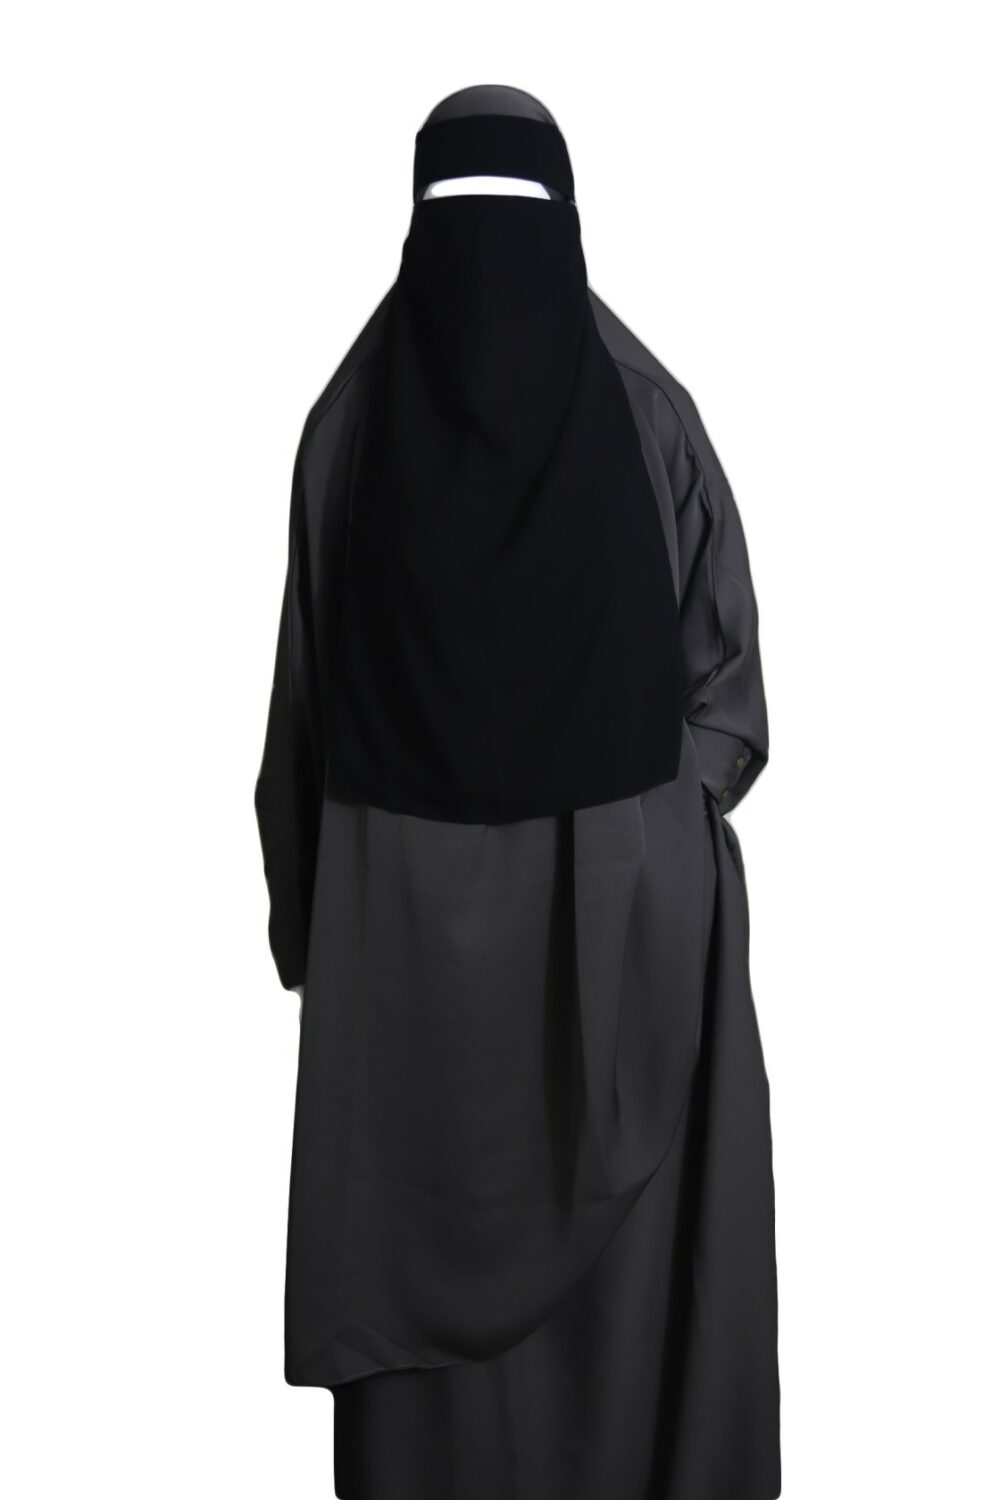 single layer niqab